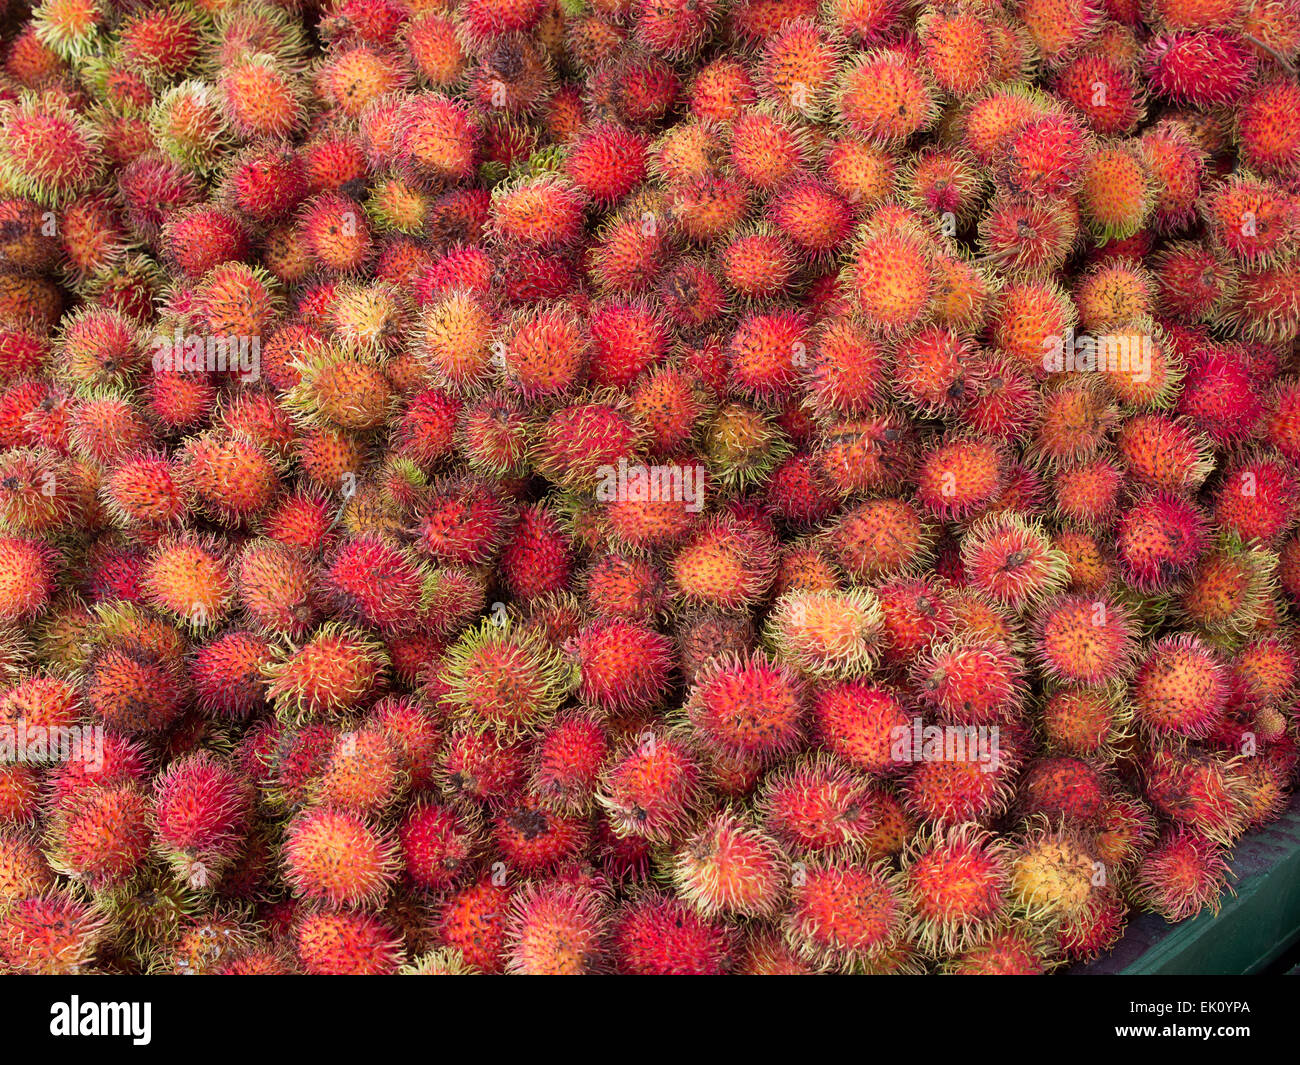 Le fruit du rambutan (Nephelium lapaceum) sur un marché costaricain. Banque D'Images